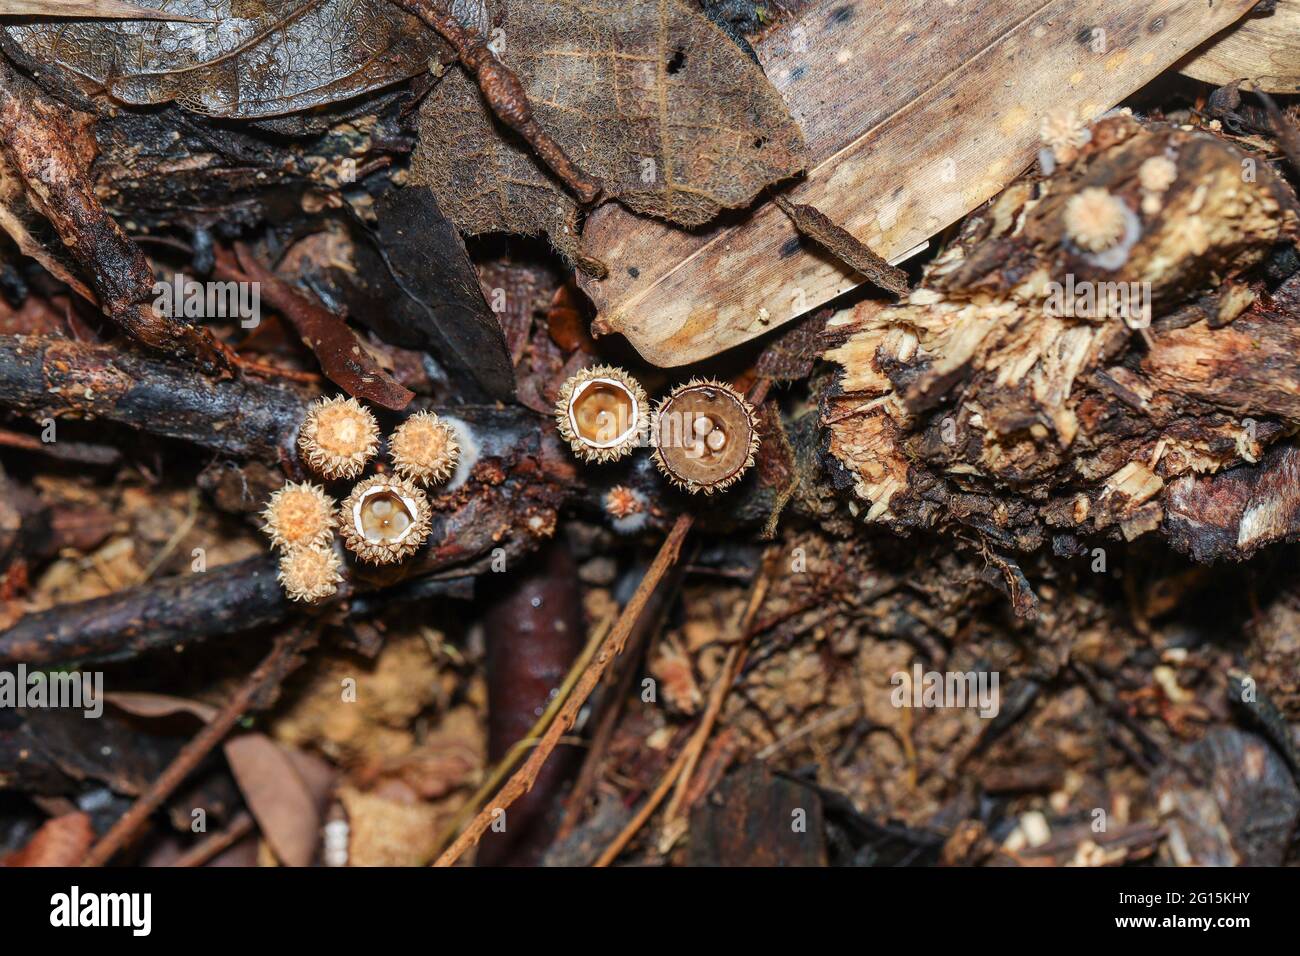 Ein Haufen von Vogelnistpilzen, Crucibulum laeve aus der Familie der Nidulariaceae, die auf einem verfallenden Baumstamm wächst Stockfoto